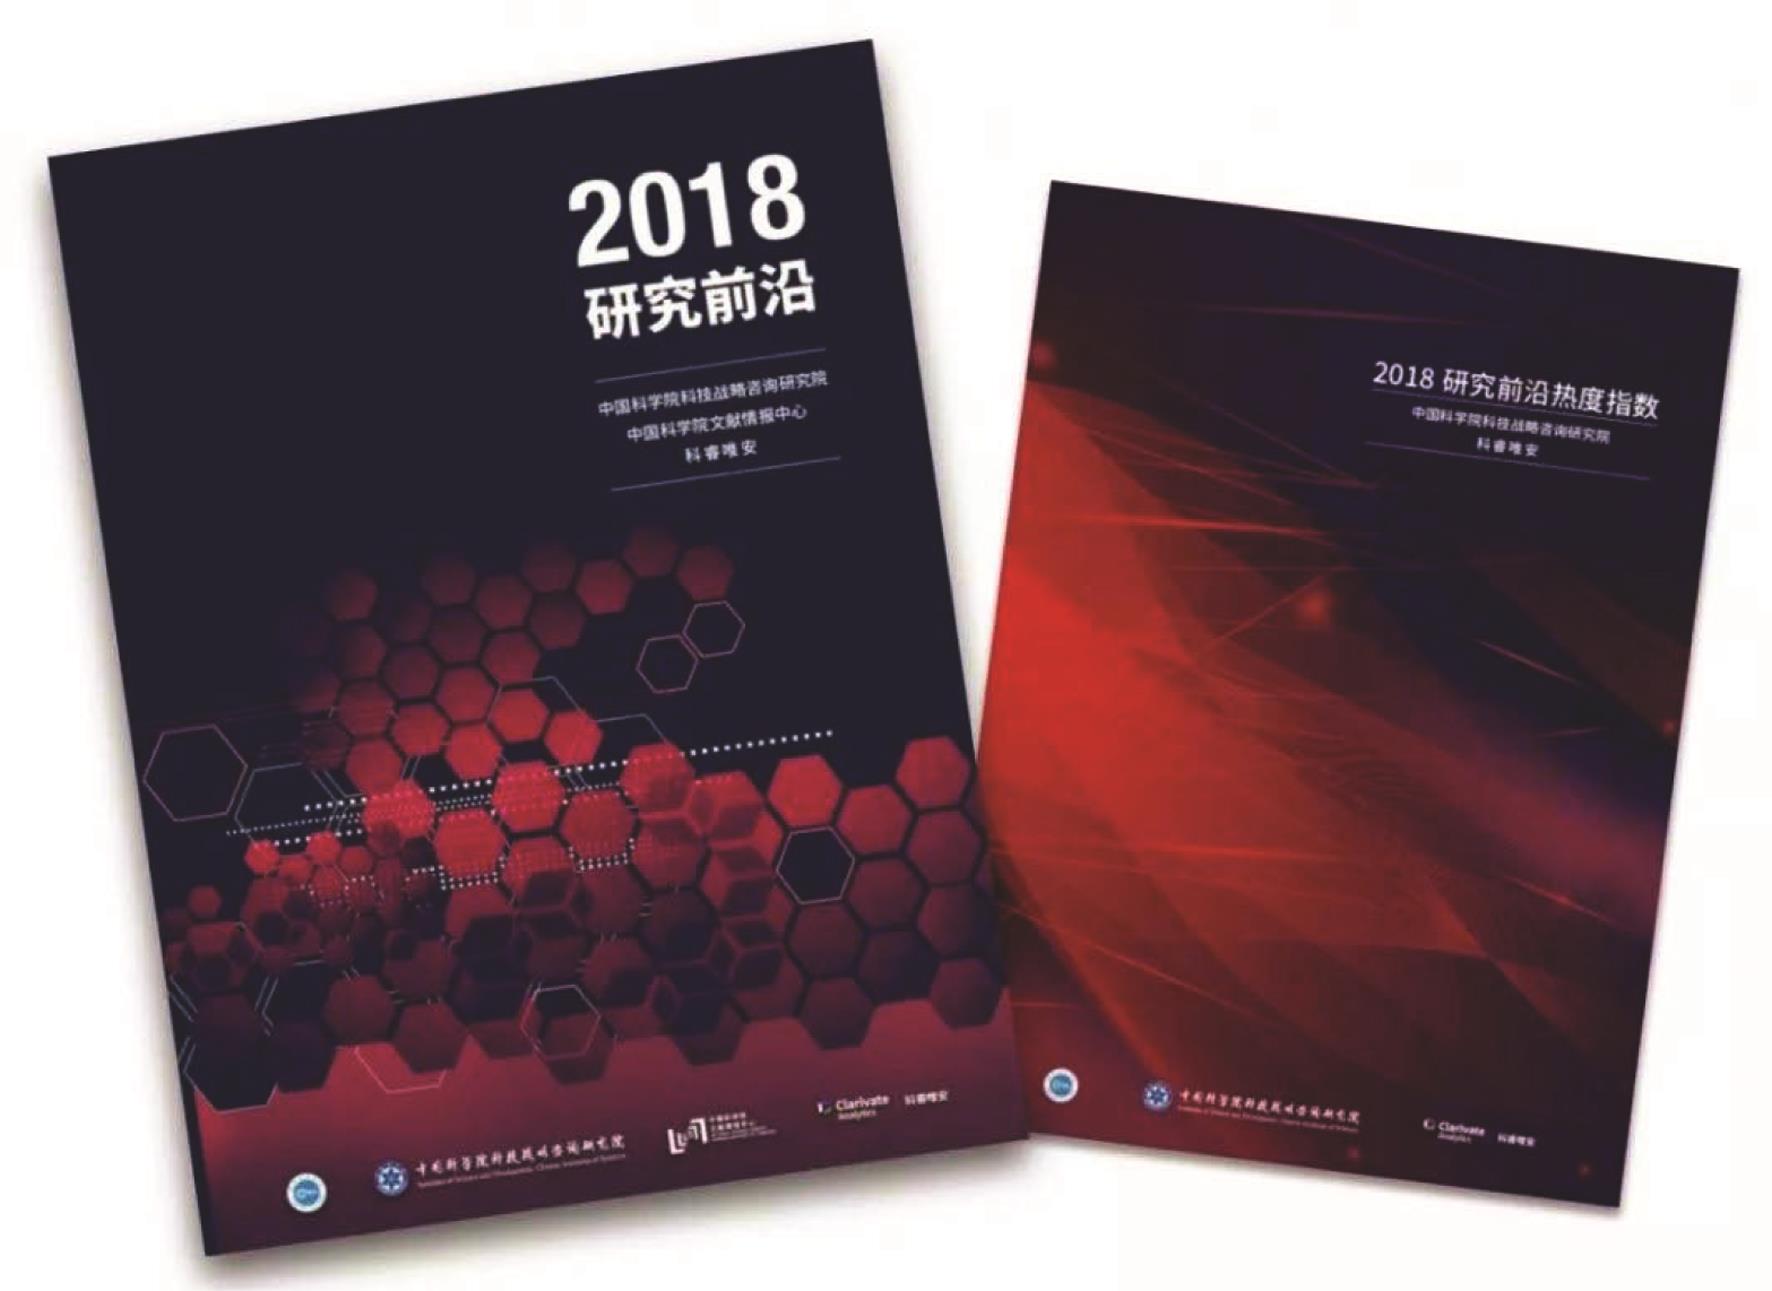 2018年10月24日科睿唯安与中国科学院联合发布了《2018研究前沿》以及《2018研究前沿热度指数》报告。